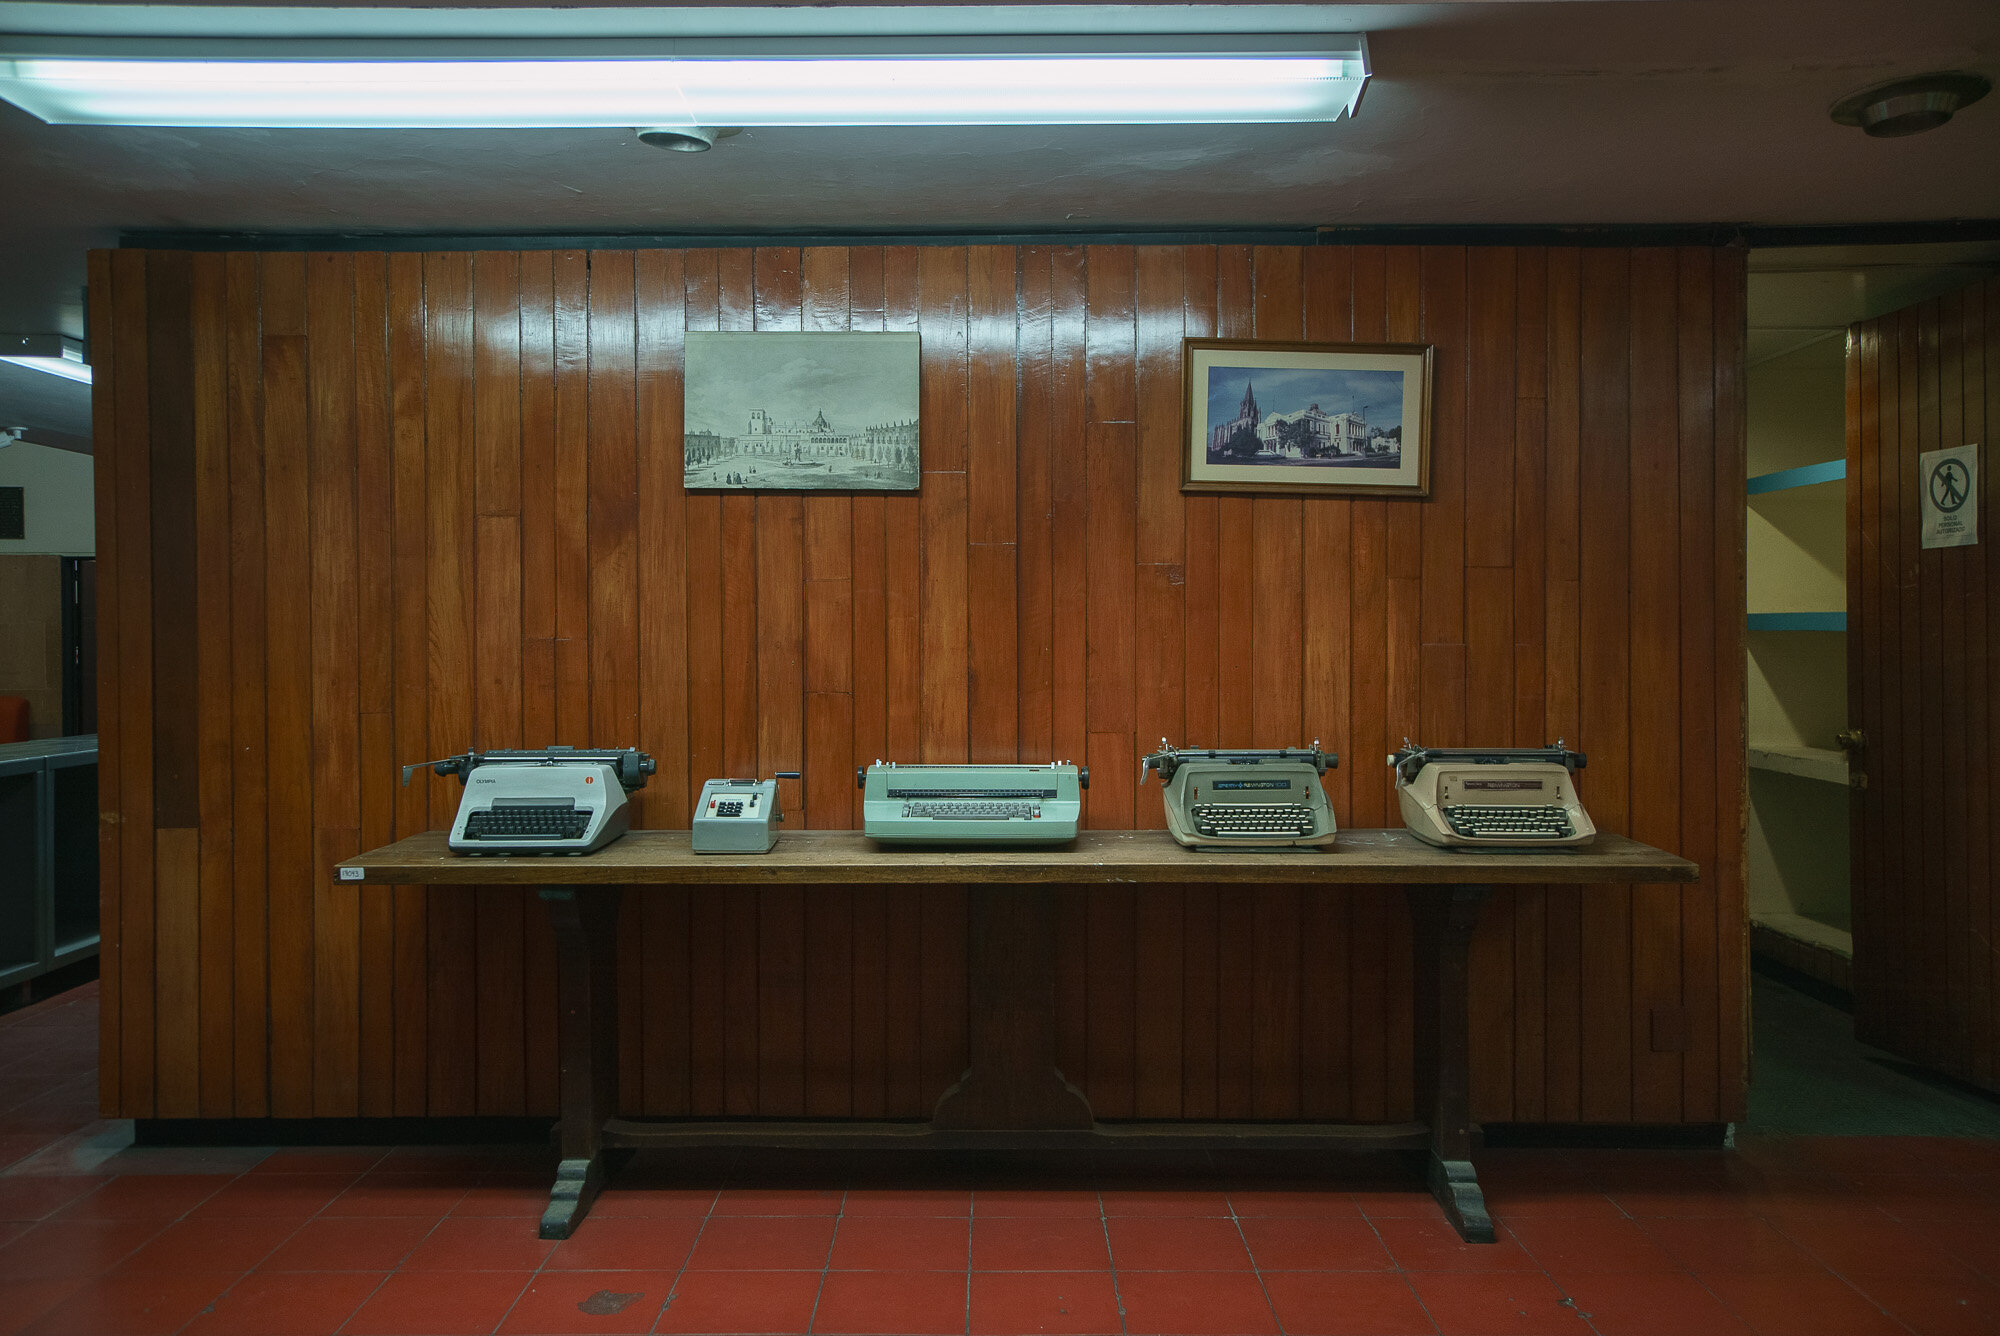 Agrupamiento de máquinas de escribir y calculadora